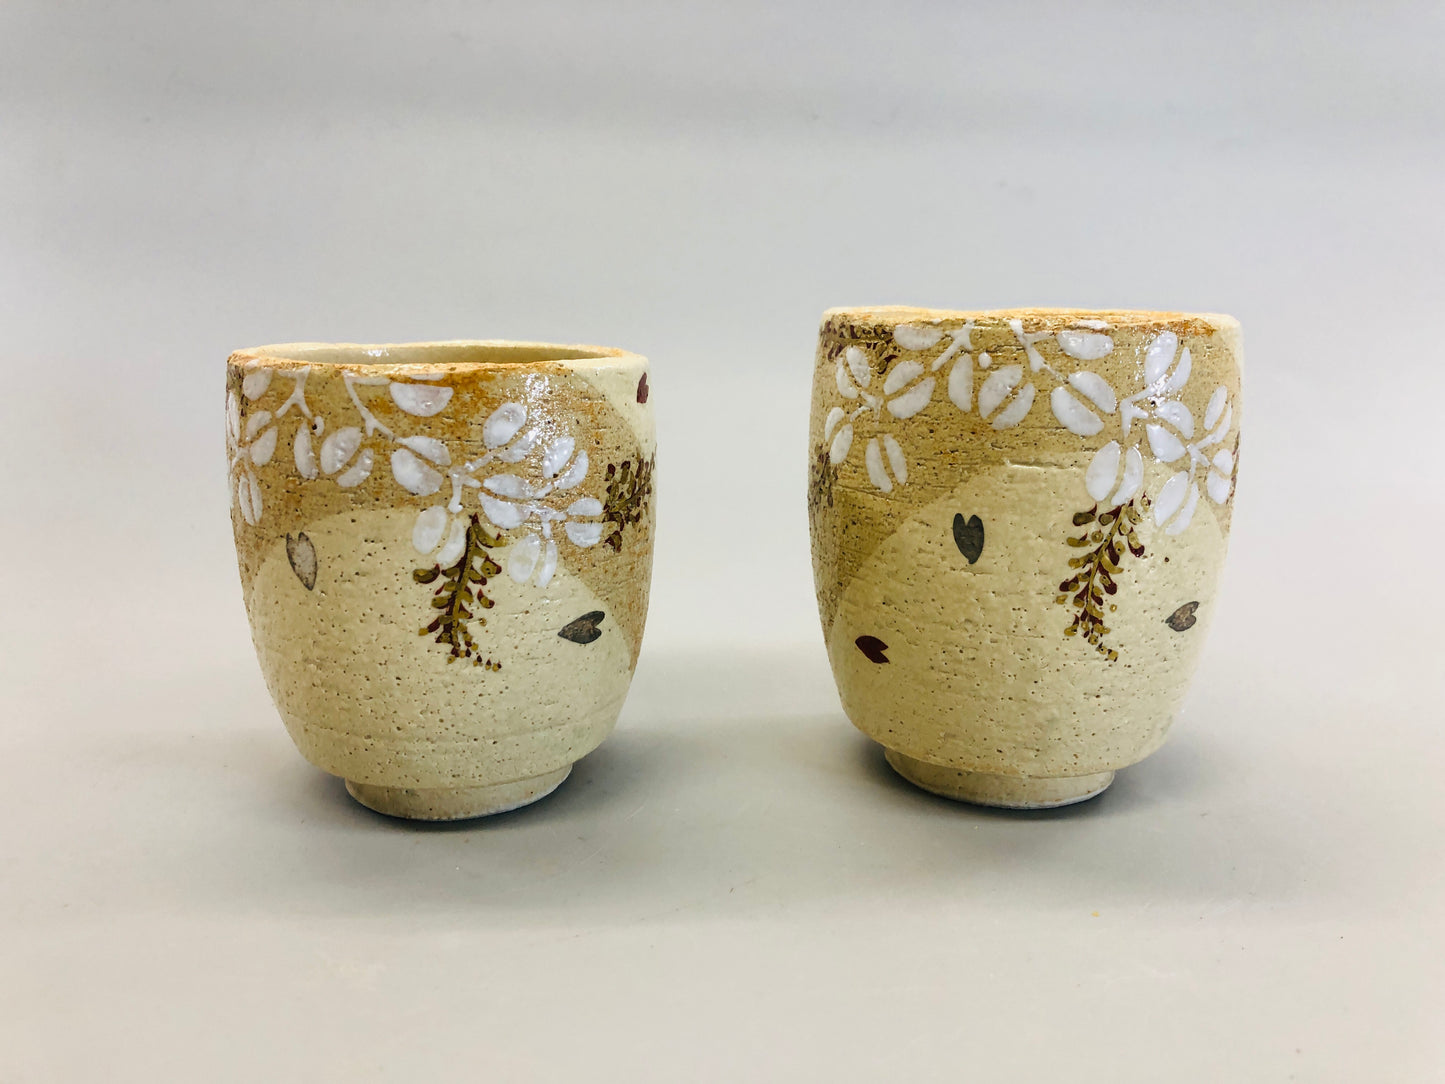 Y5383 YUNOMI Seto-ware cup signed box Japan antique tea ceremony pottery vintage